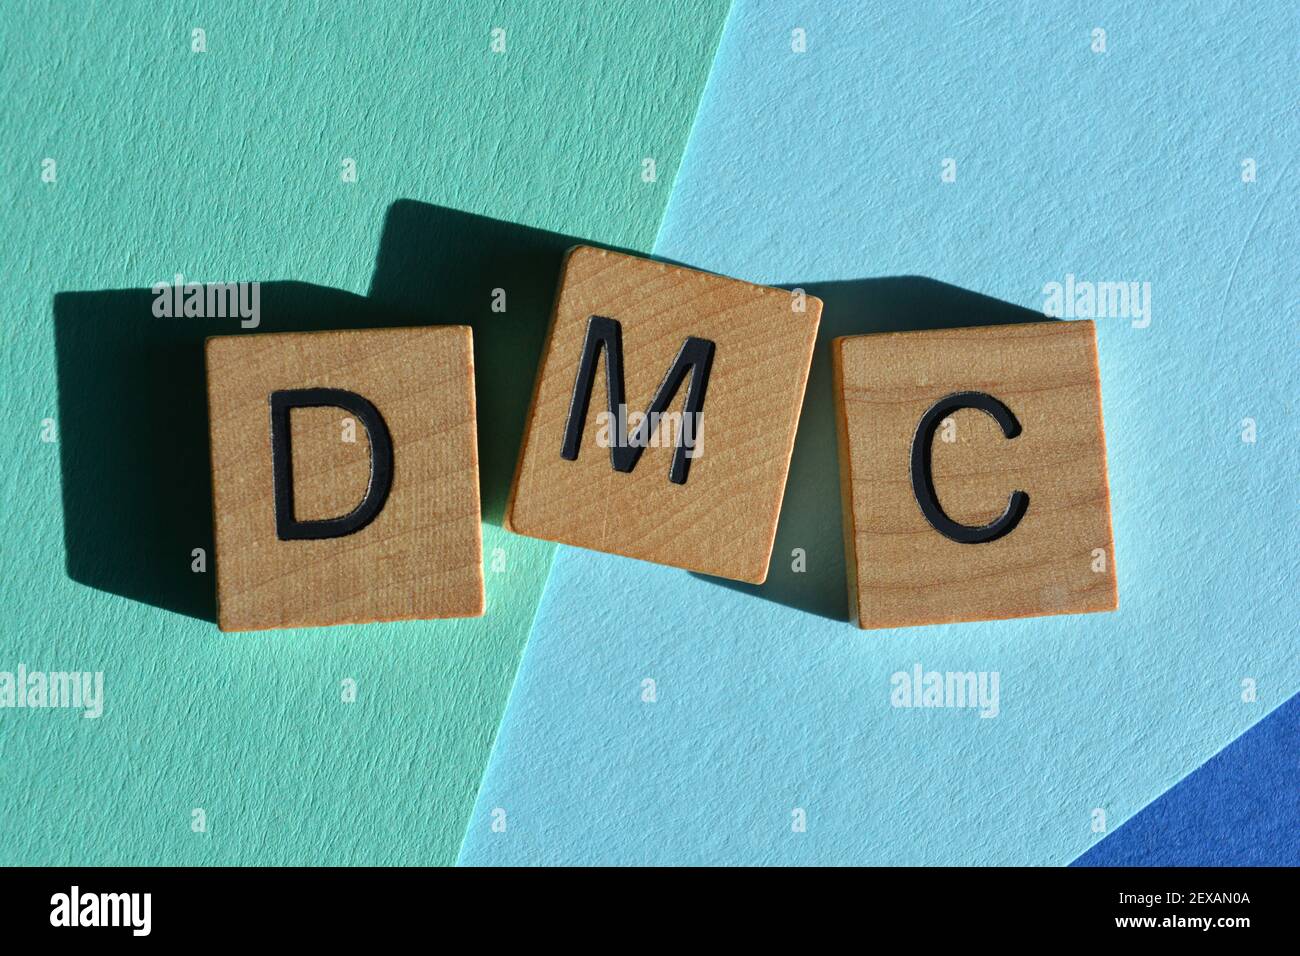 DMC, acronyme de conversation profonde et significative. Langage Internet ou texte Banque D'Images